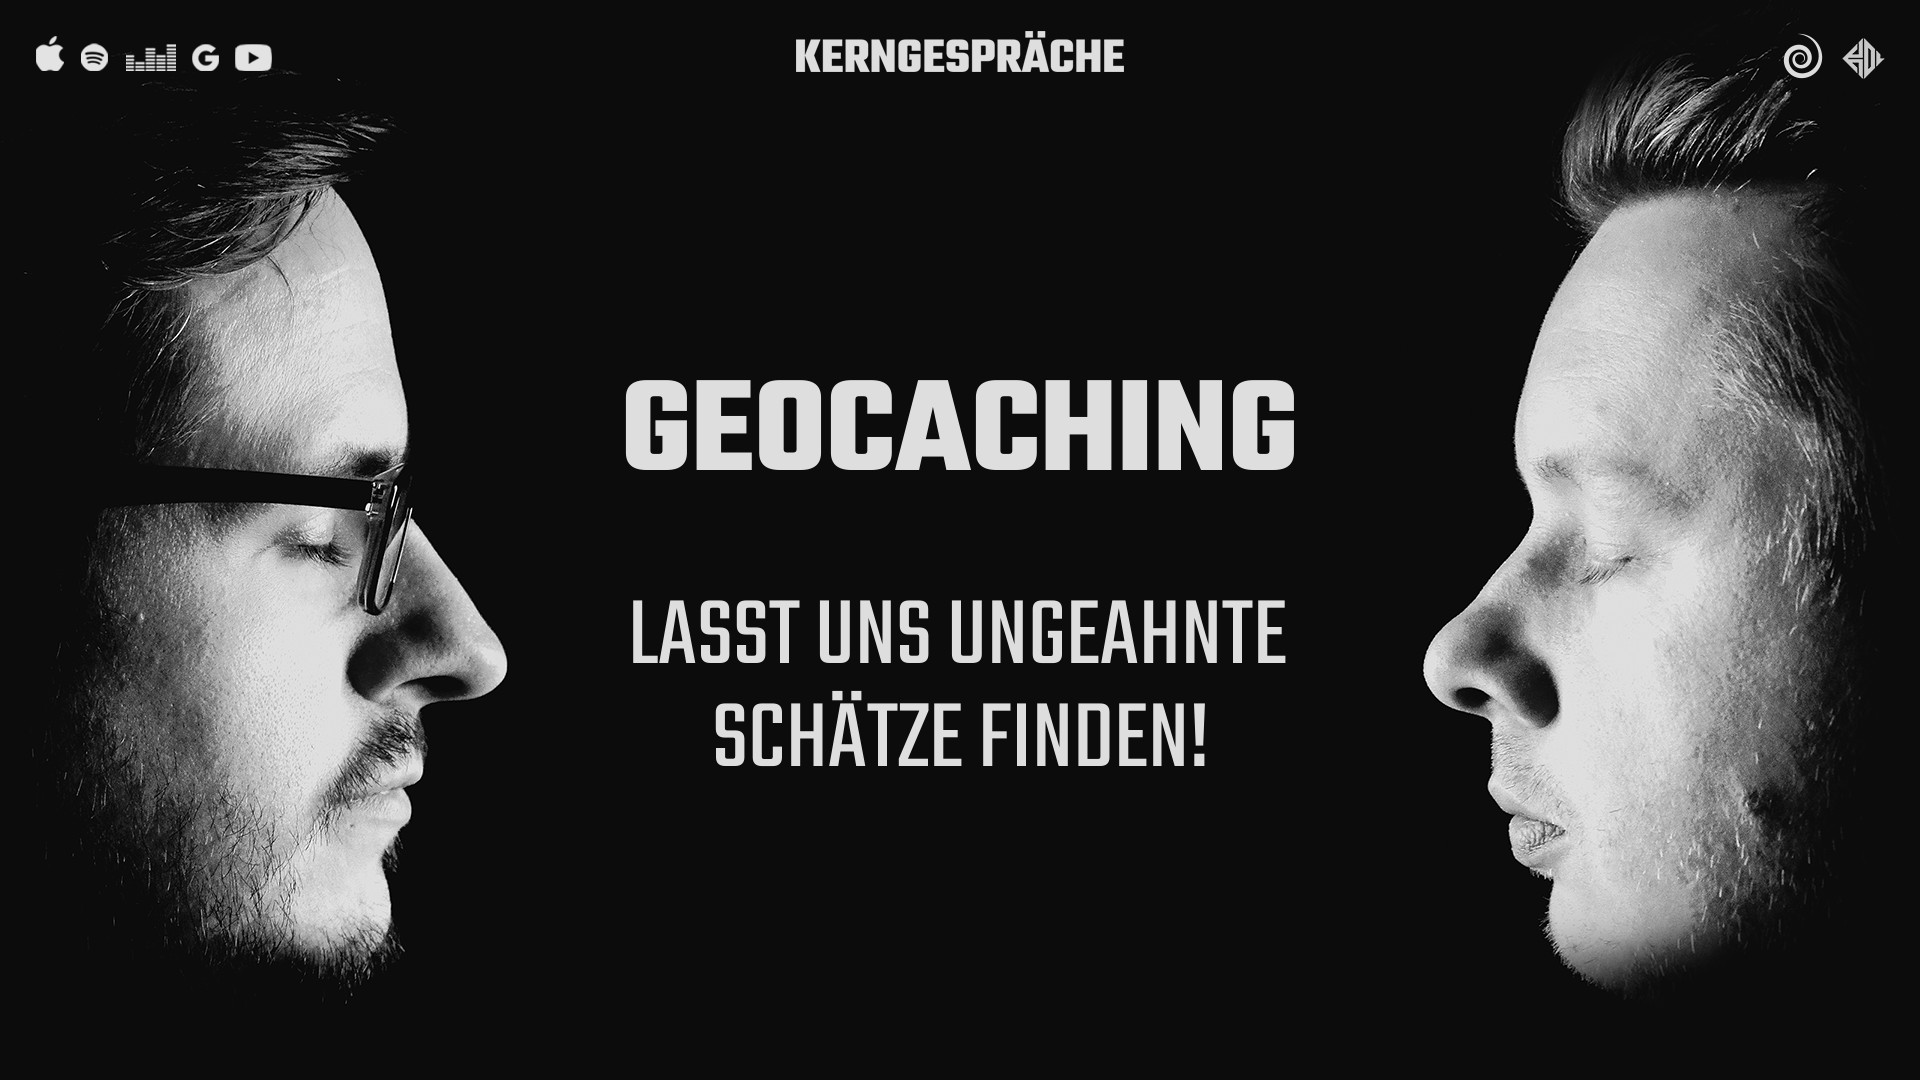 Geocaching: Lasst uns ungeahnte Schätze finden!